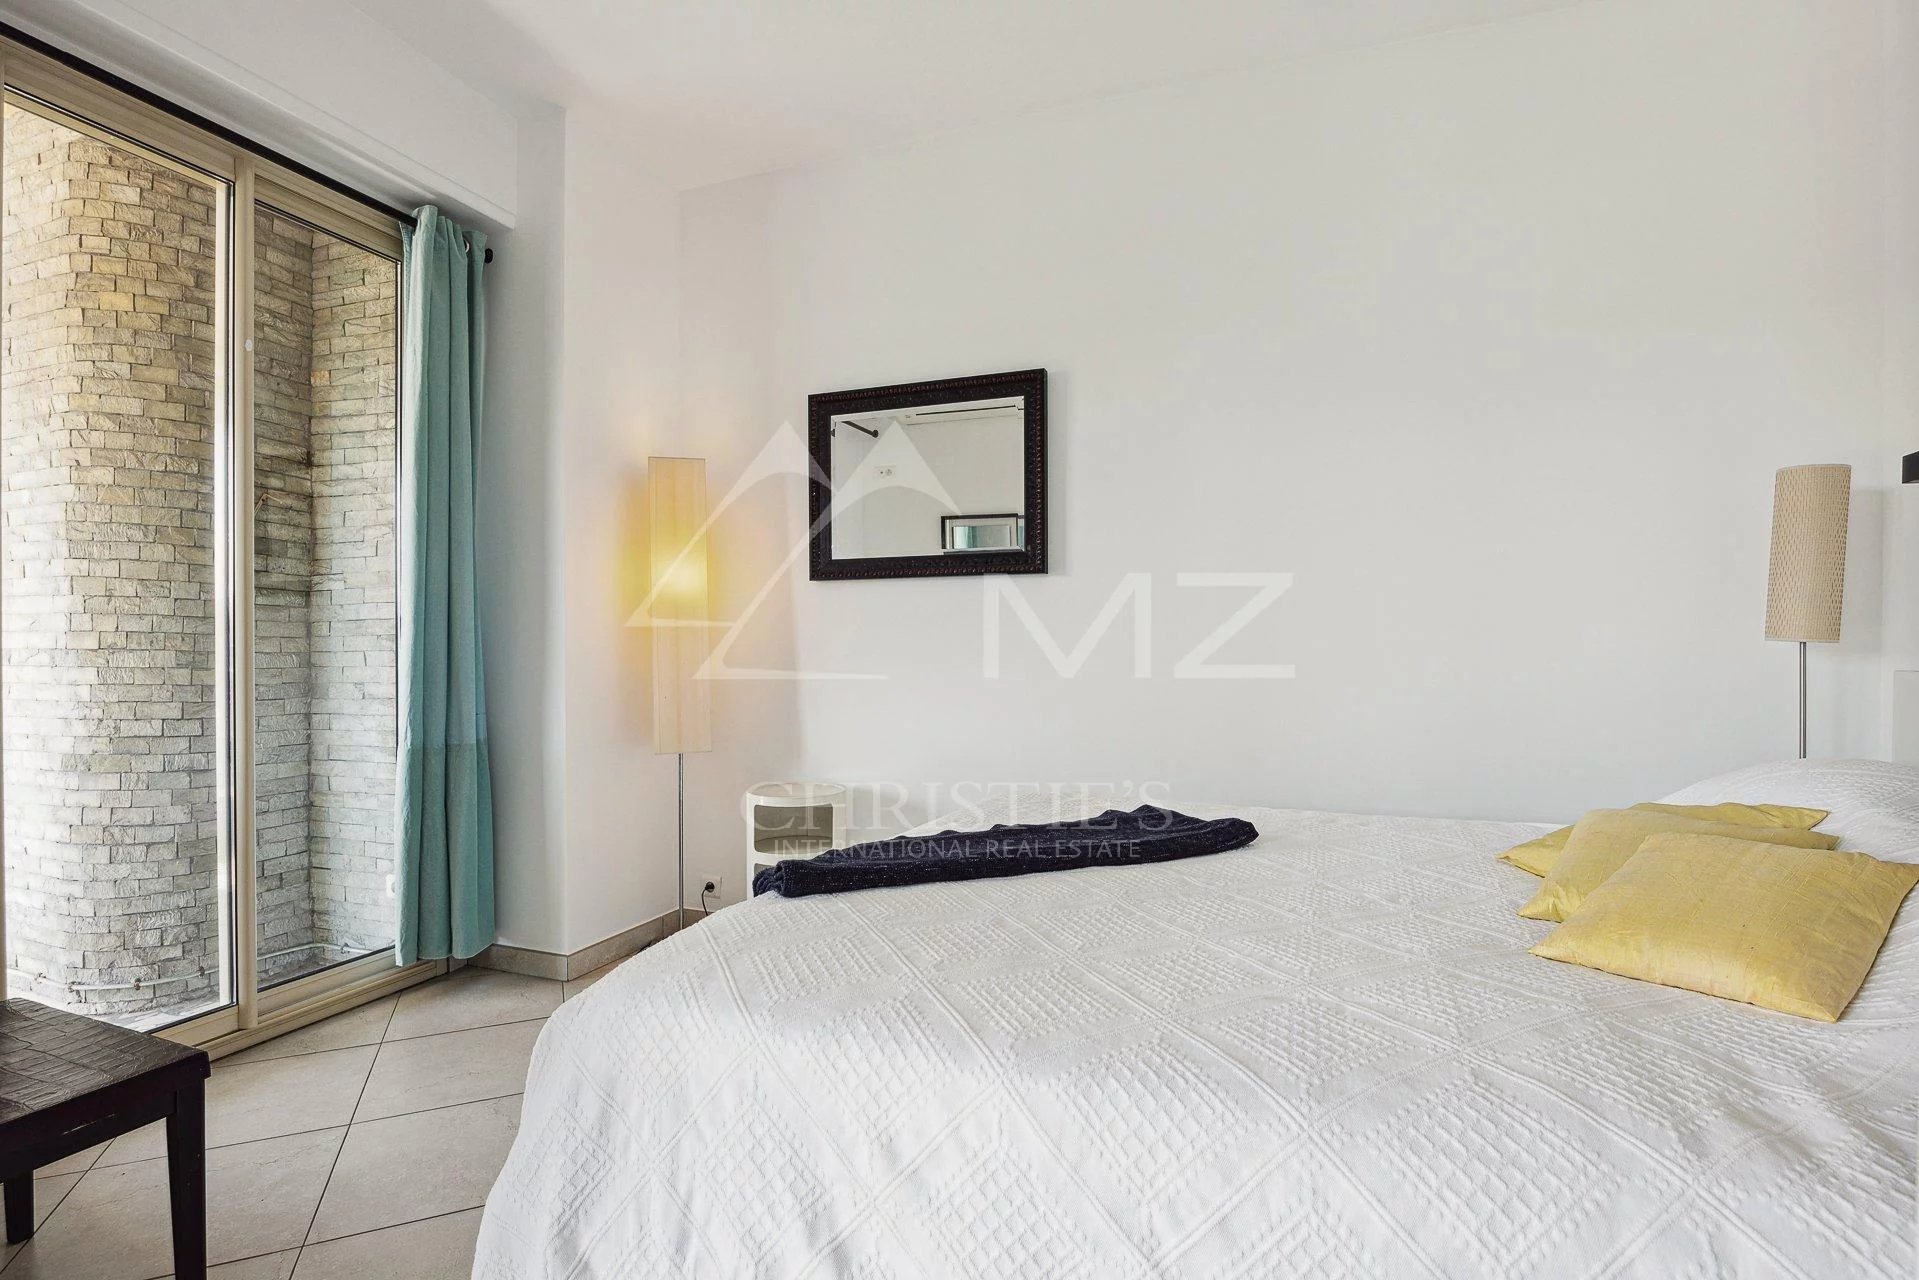 Cannes Croisette - Palm Beach - Appartement 2 pièces rénové vue mer